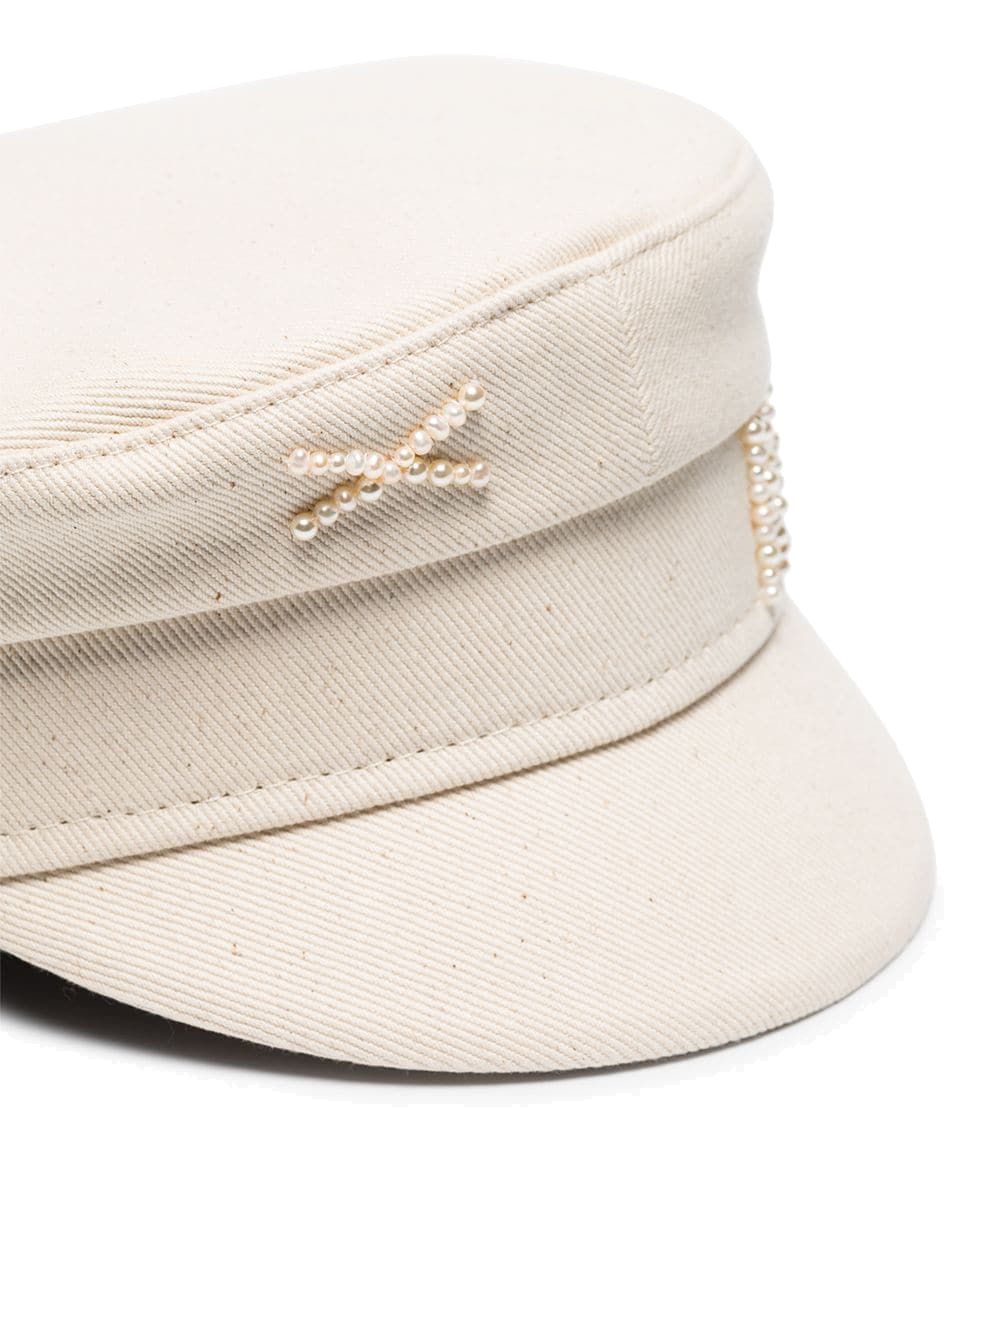 Light beige cotton hat